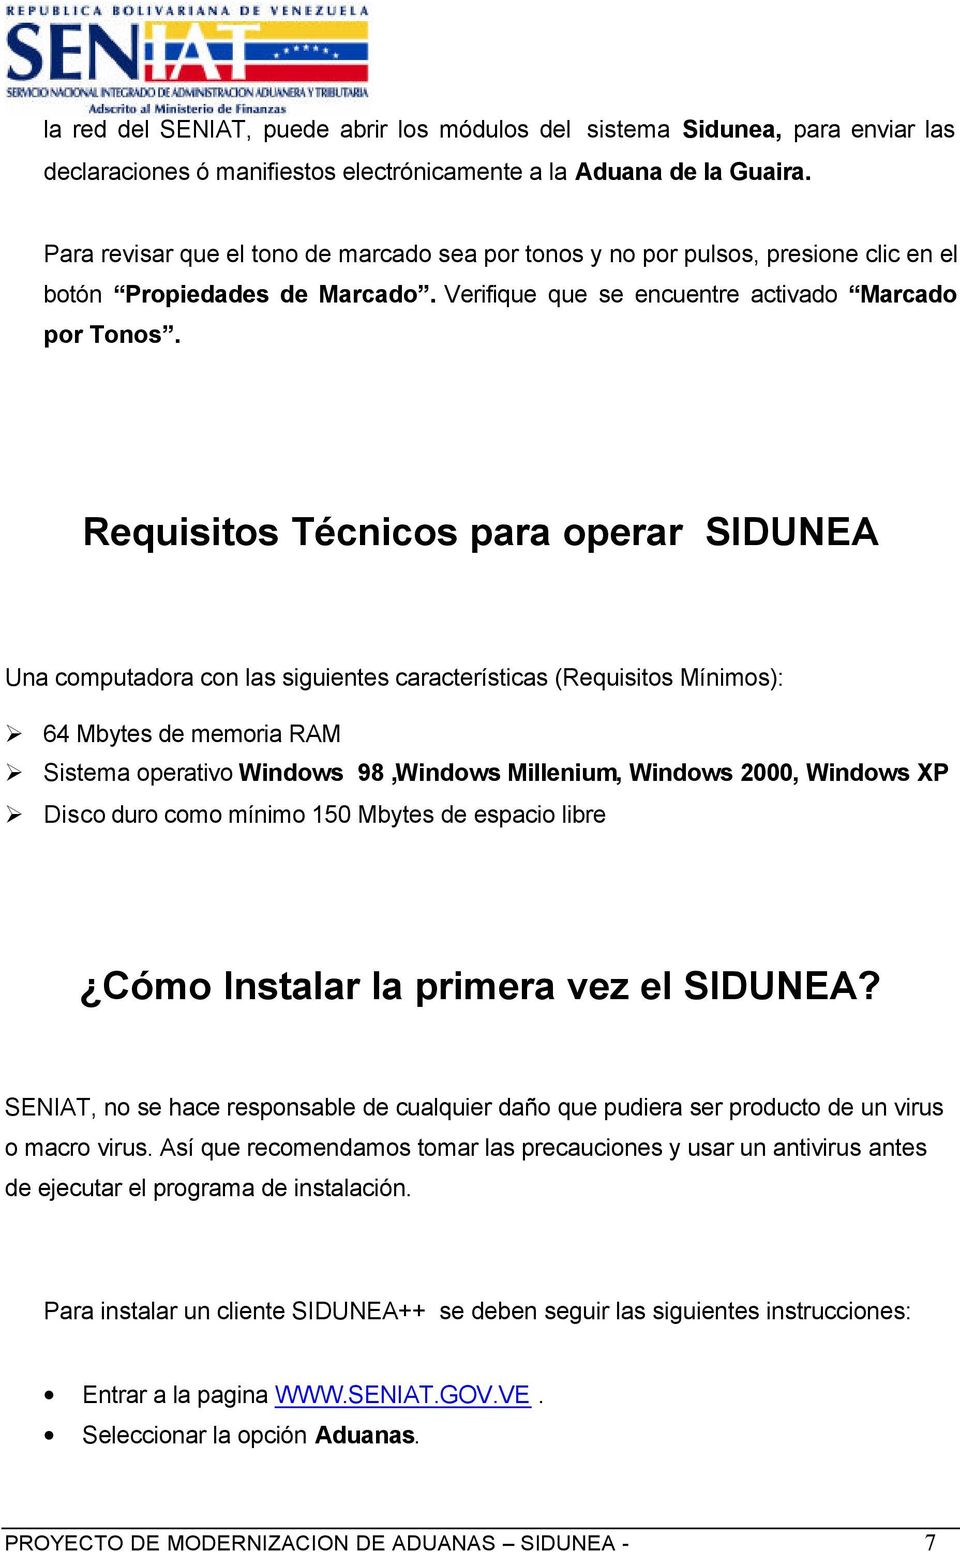 Requisitos Técnicos para operar SIDUNEA Una computadora con las siguientes características (Requisitos Mínimos): 64 Mbytes de memoria RAM Sistema operativo Windows 98,Windows Millenium, Windows 2000,